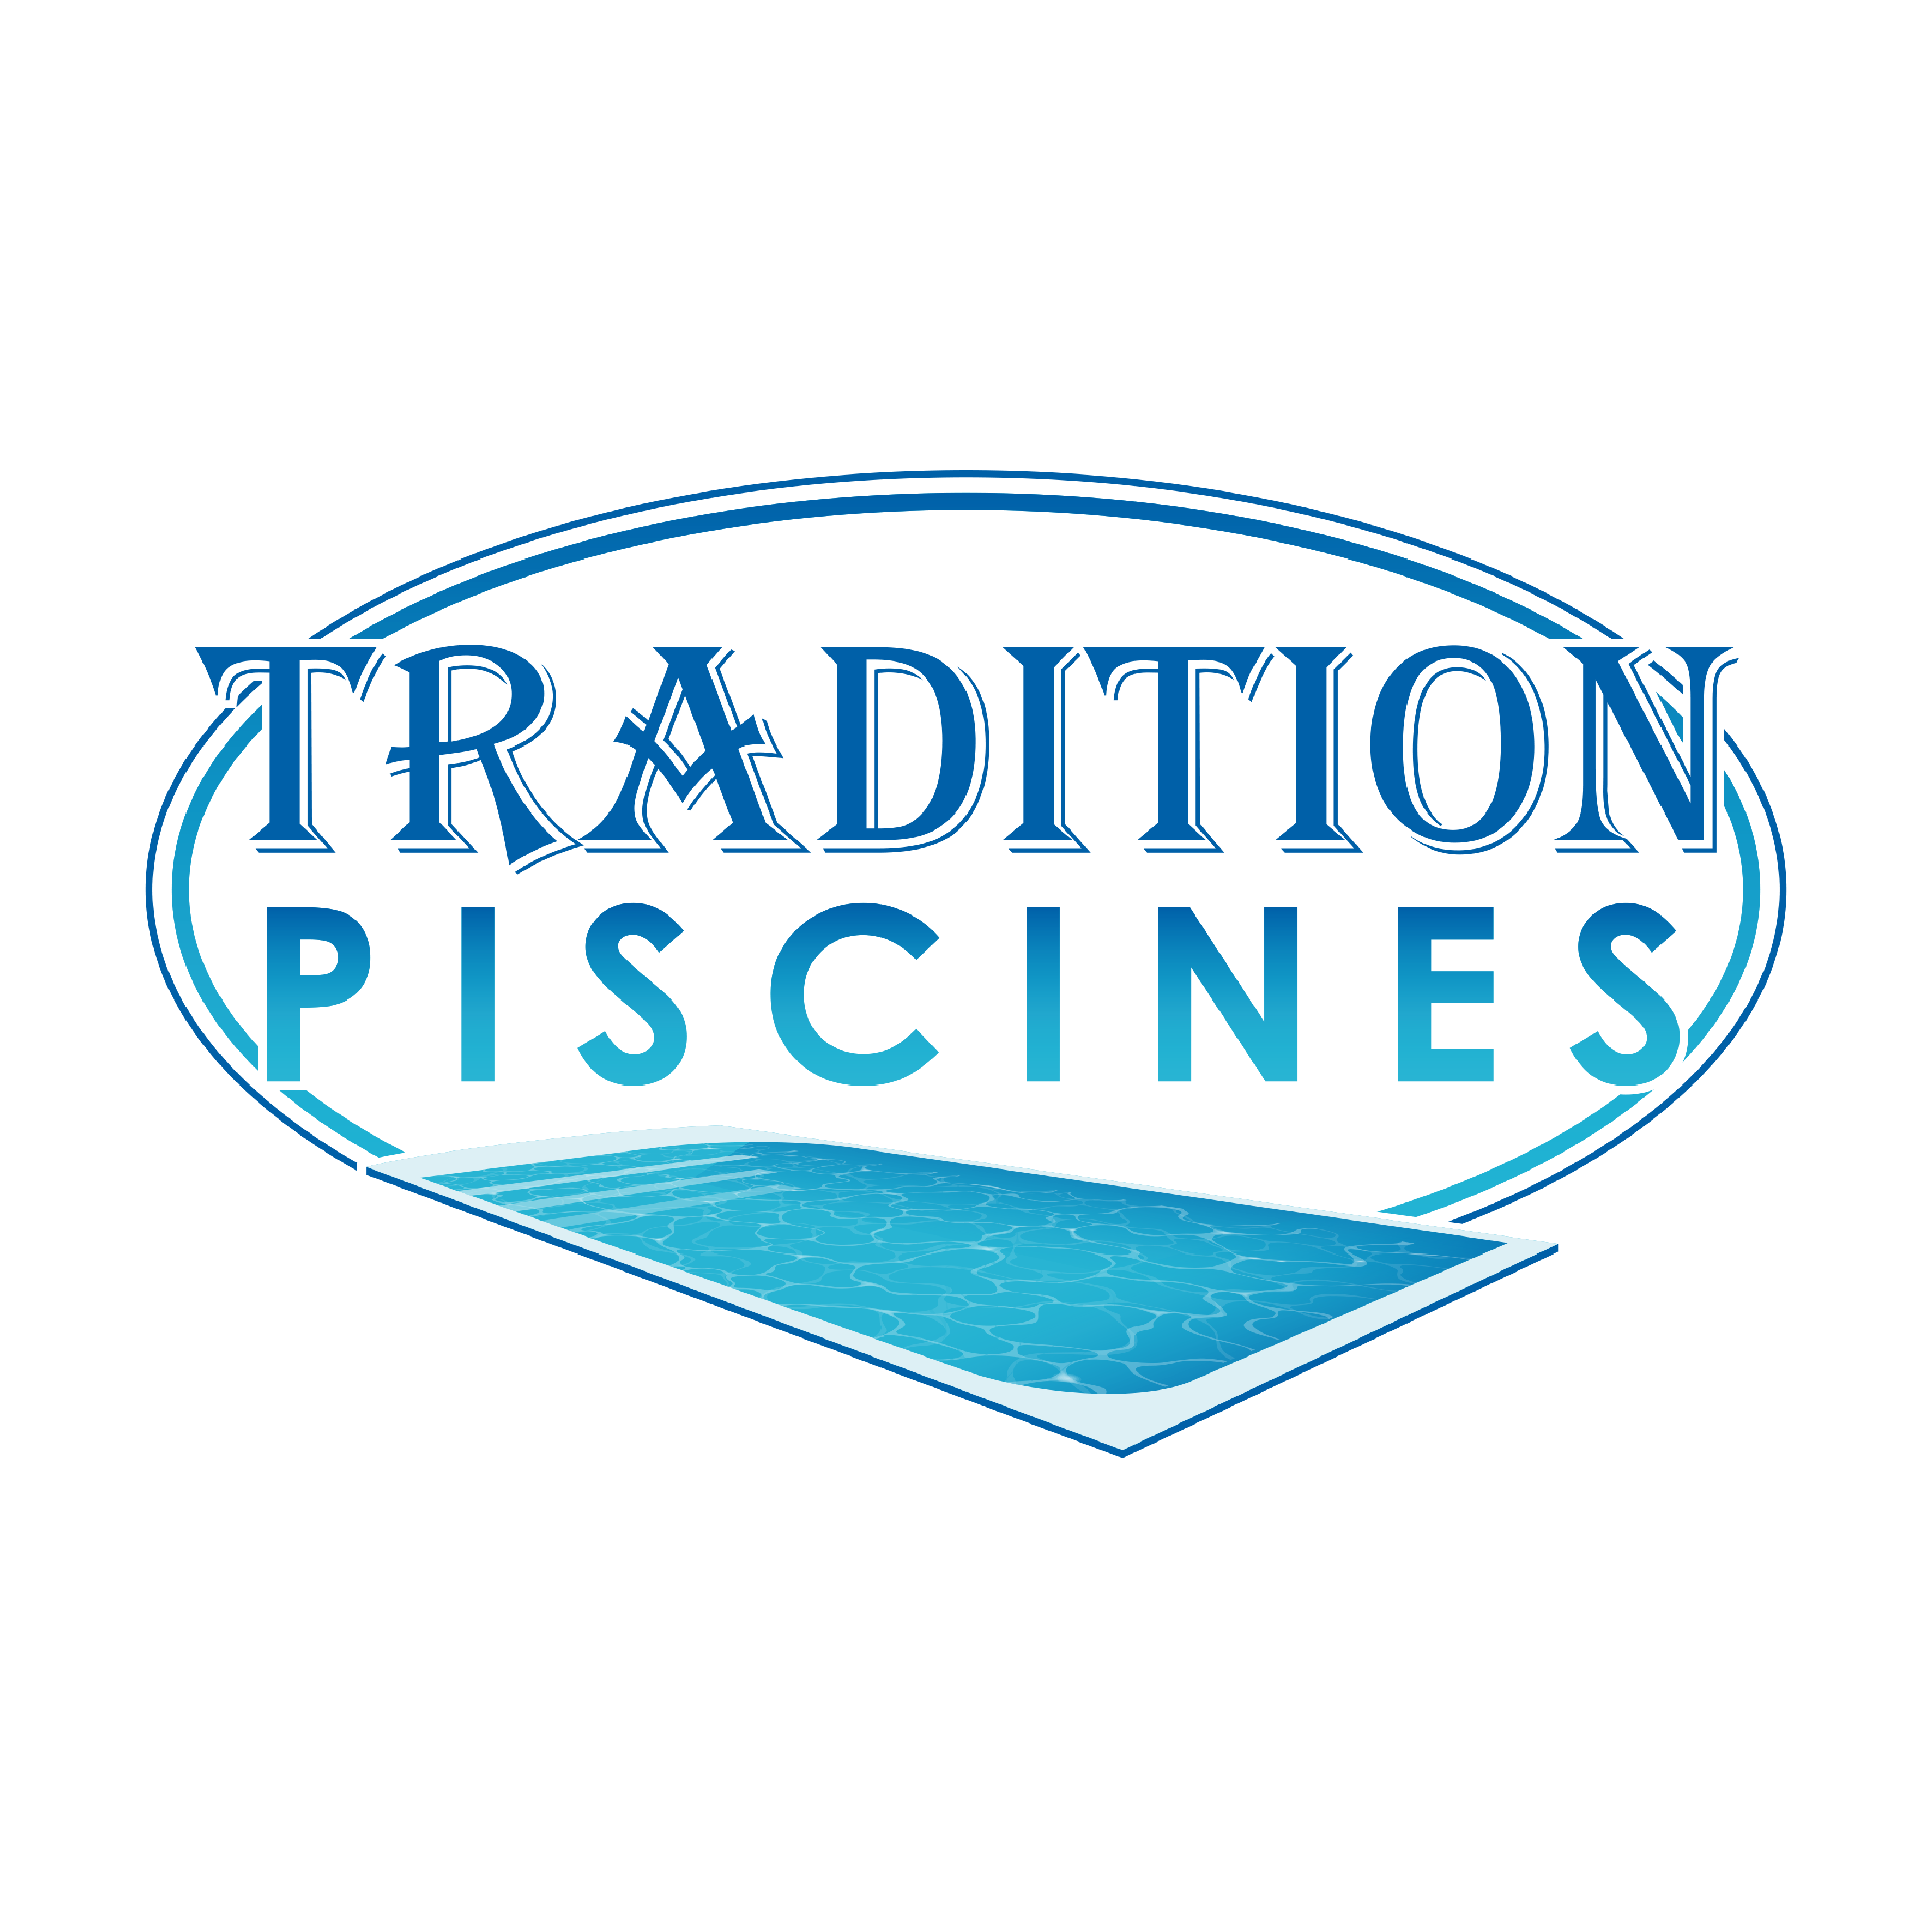 Création du nouveau logo 2023 Tradition Piscines